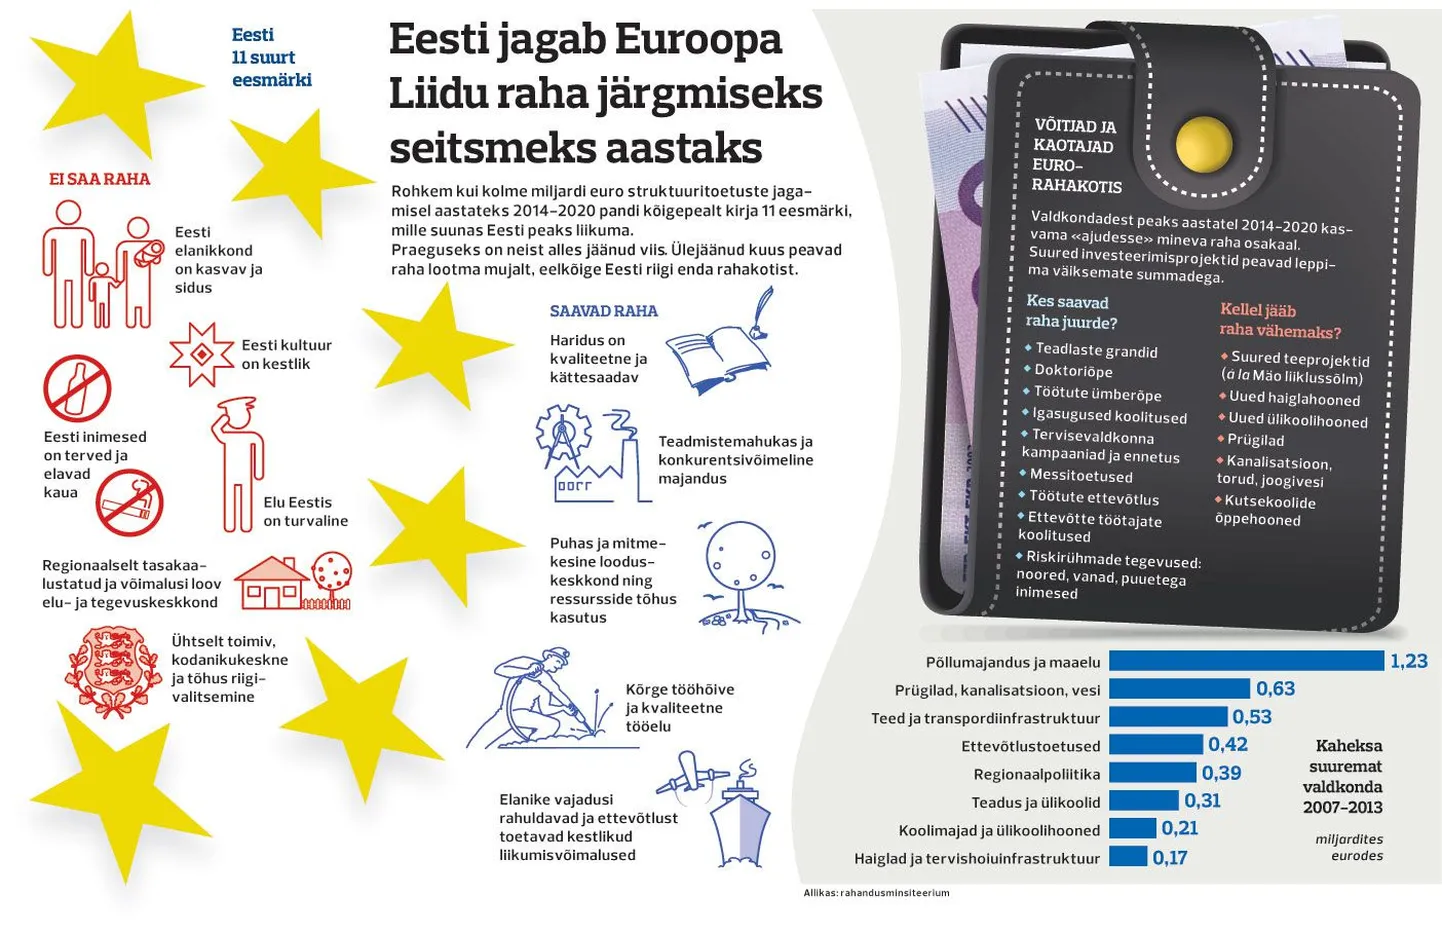 Eesti jagab Euroopa raha järgmiseks seitsmeks aastaks.